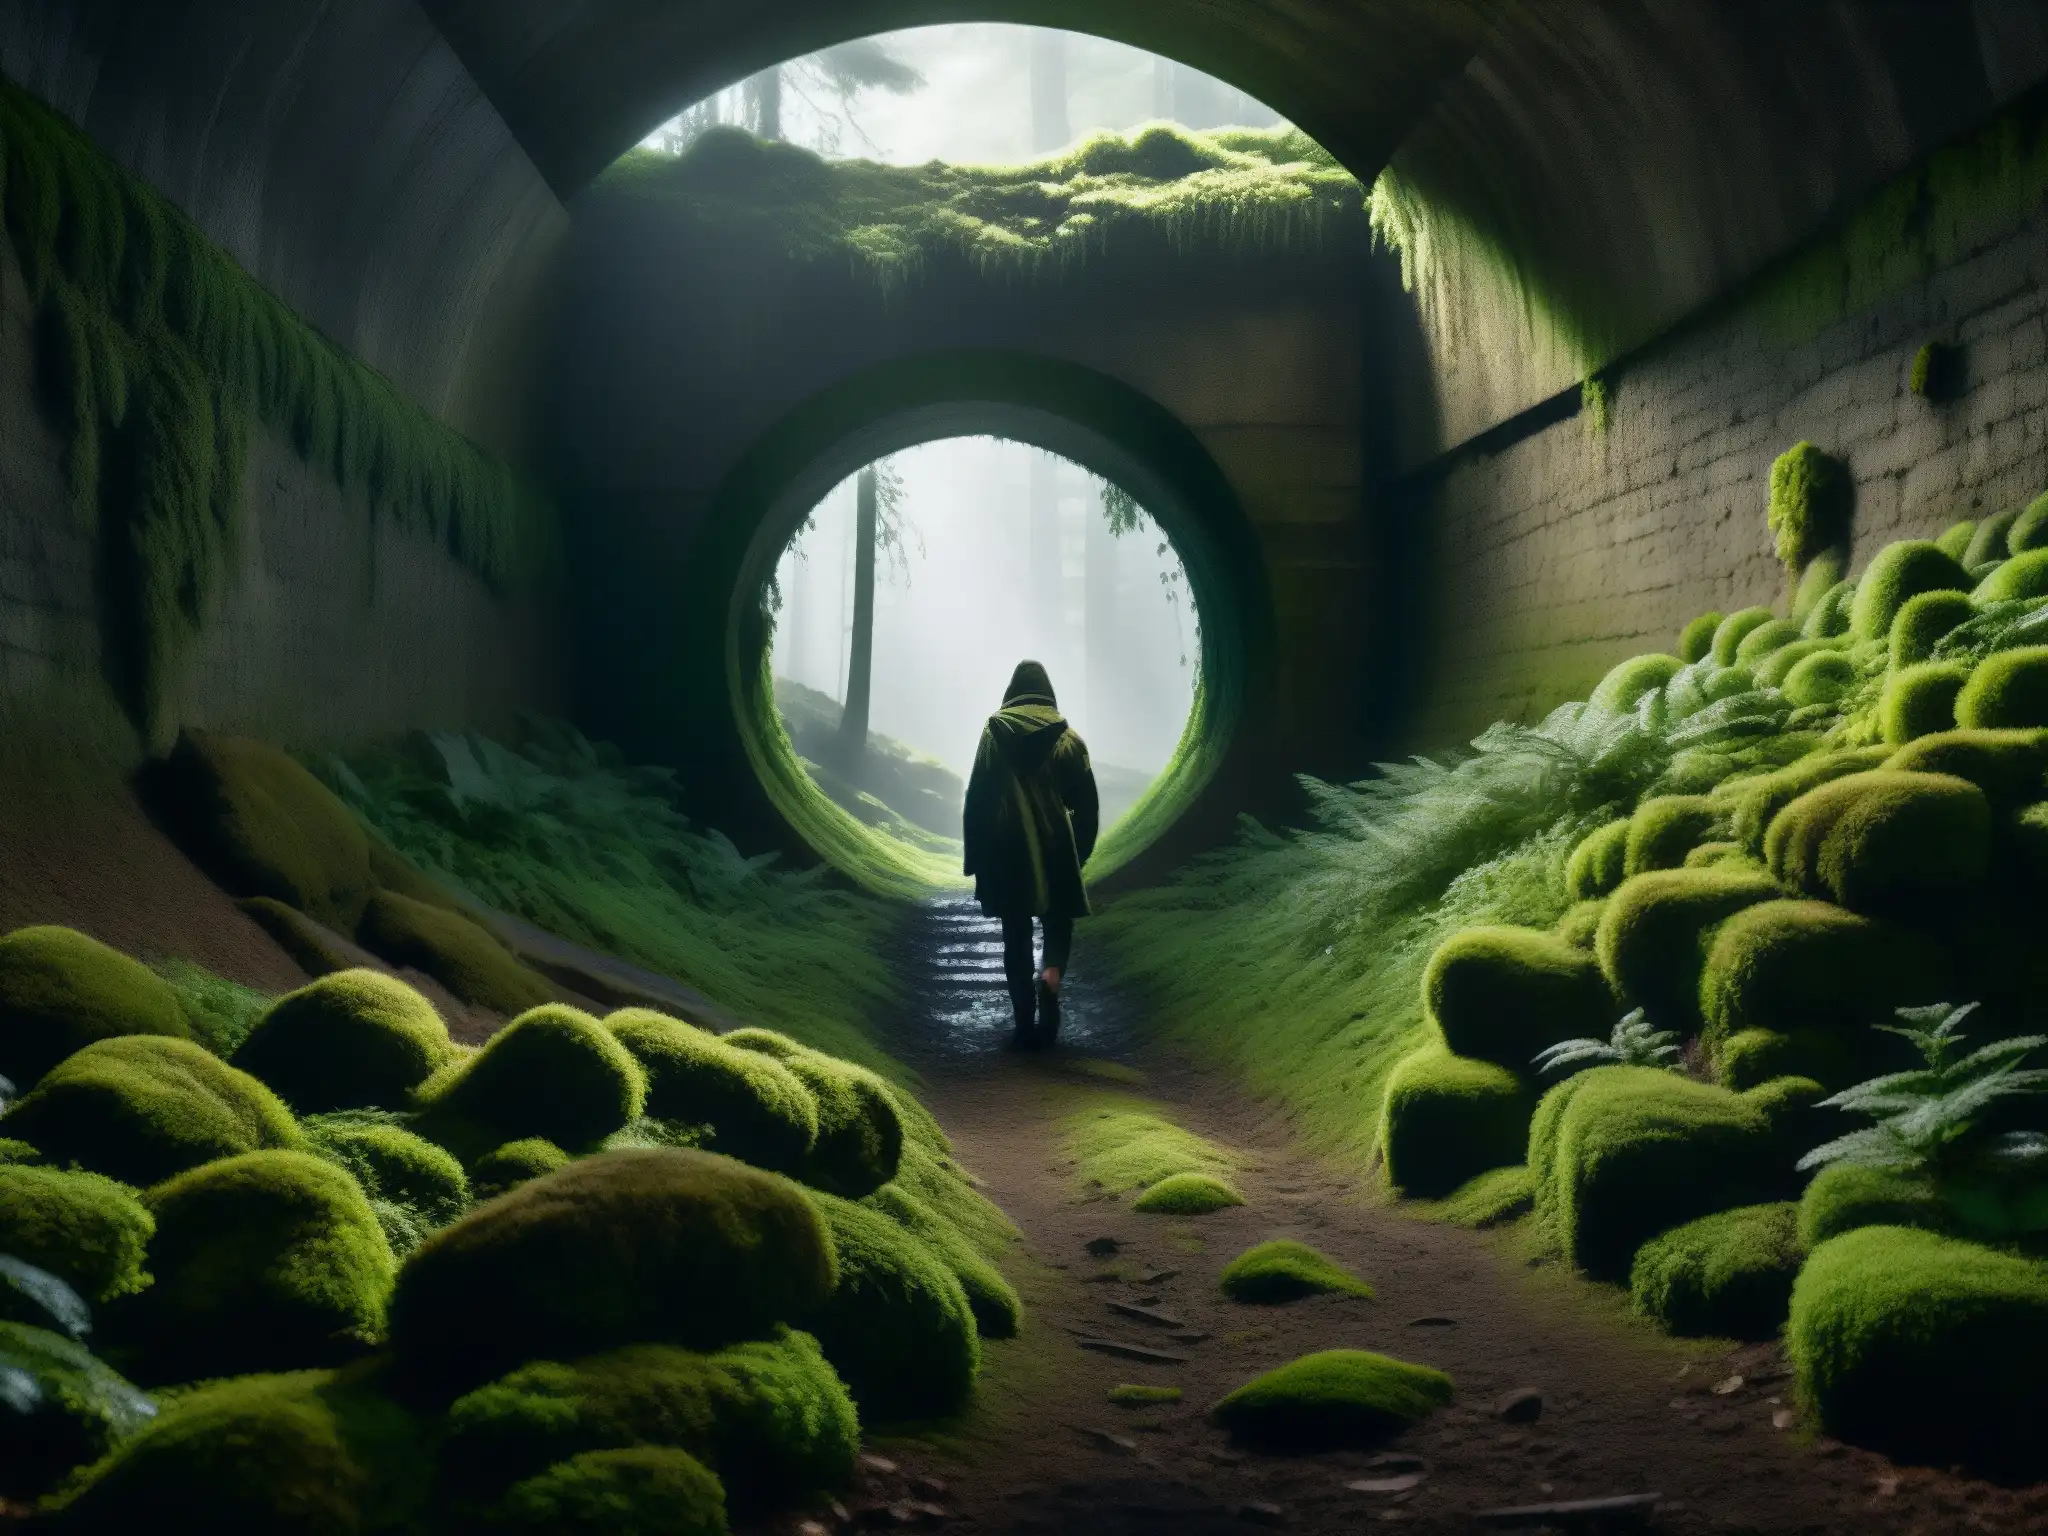 Entrada a un túnel Kiyotaki, envuelto en misterio y rodeado de bosque denso y ominoso